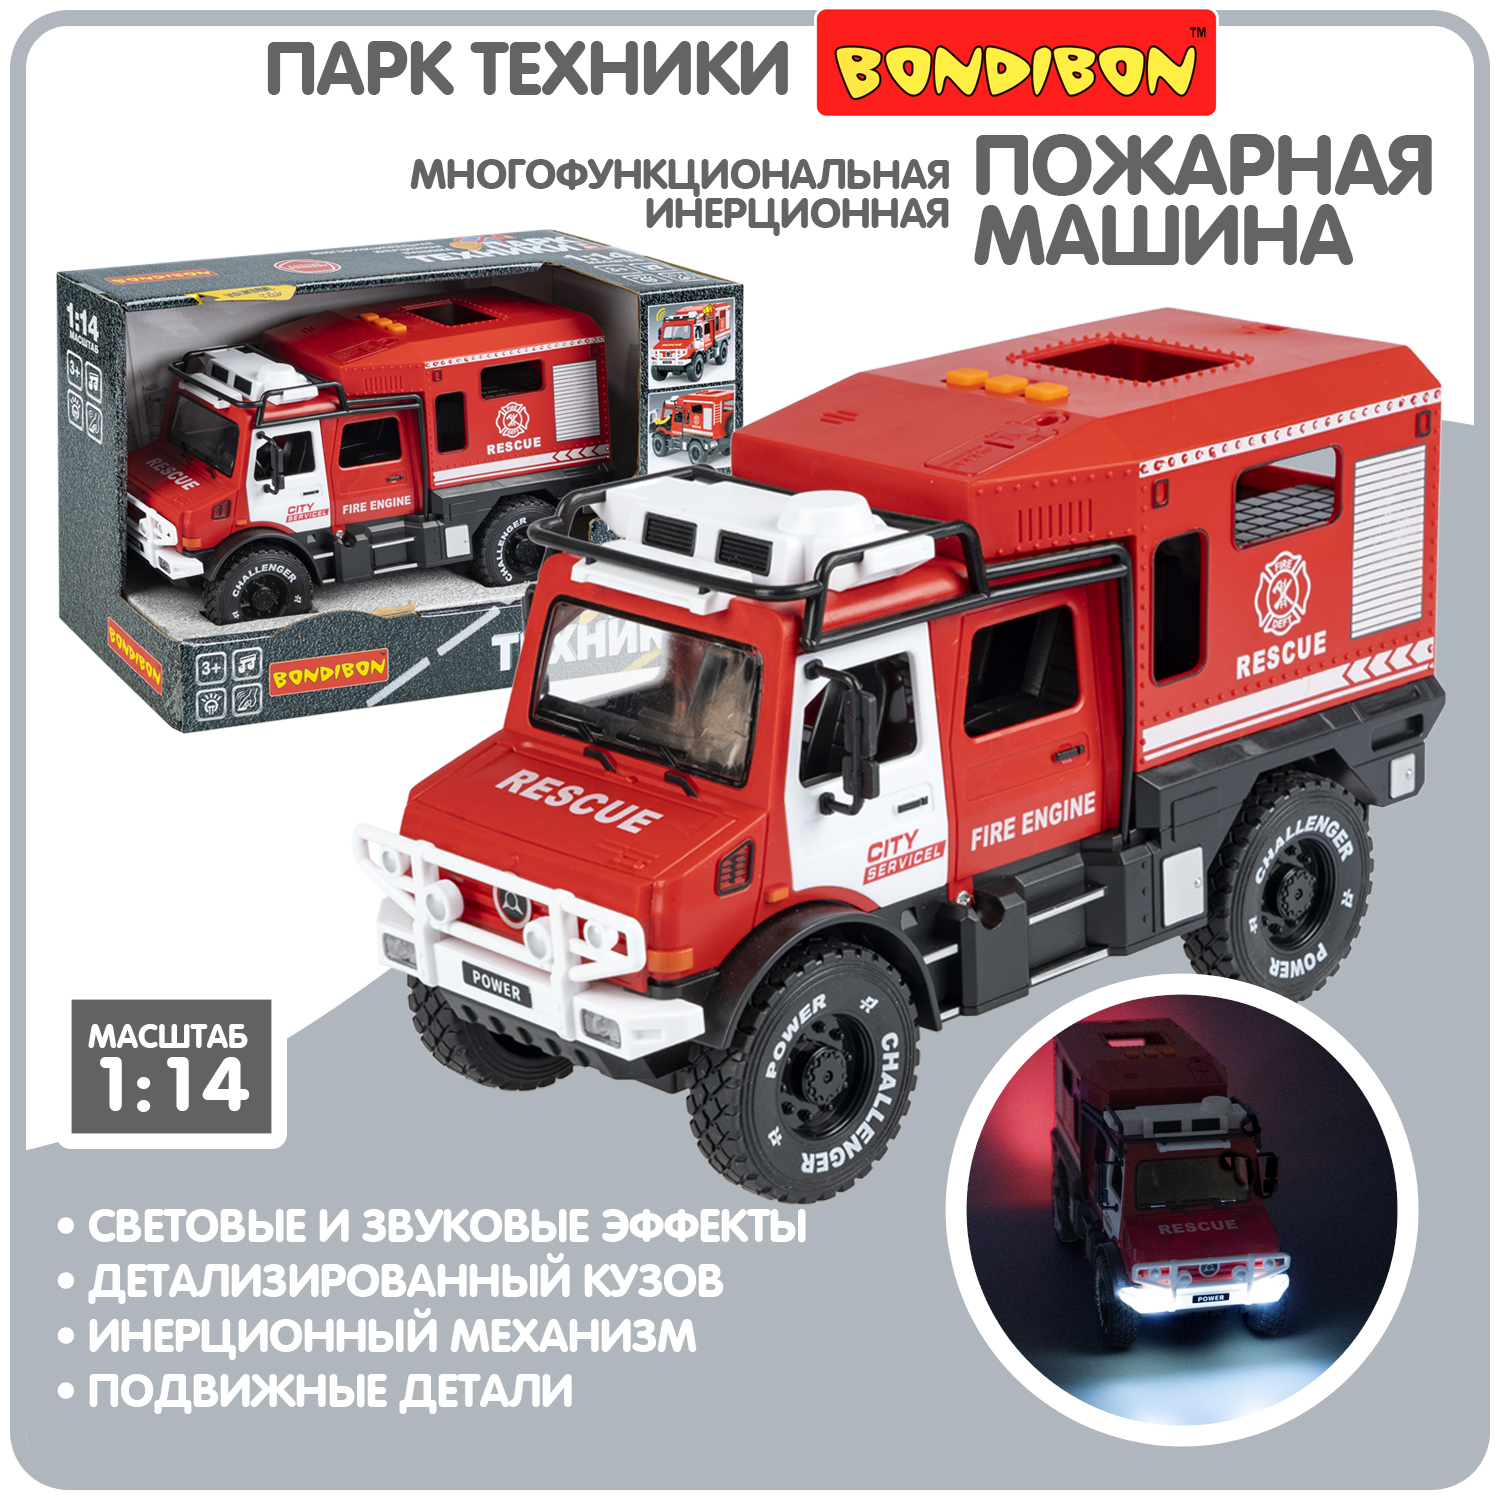 Многофункциональная инерционная машинка Bondibon «ПАРК ТЕХНИКИ», пожарный внедорожник, BO